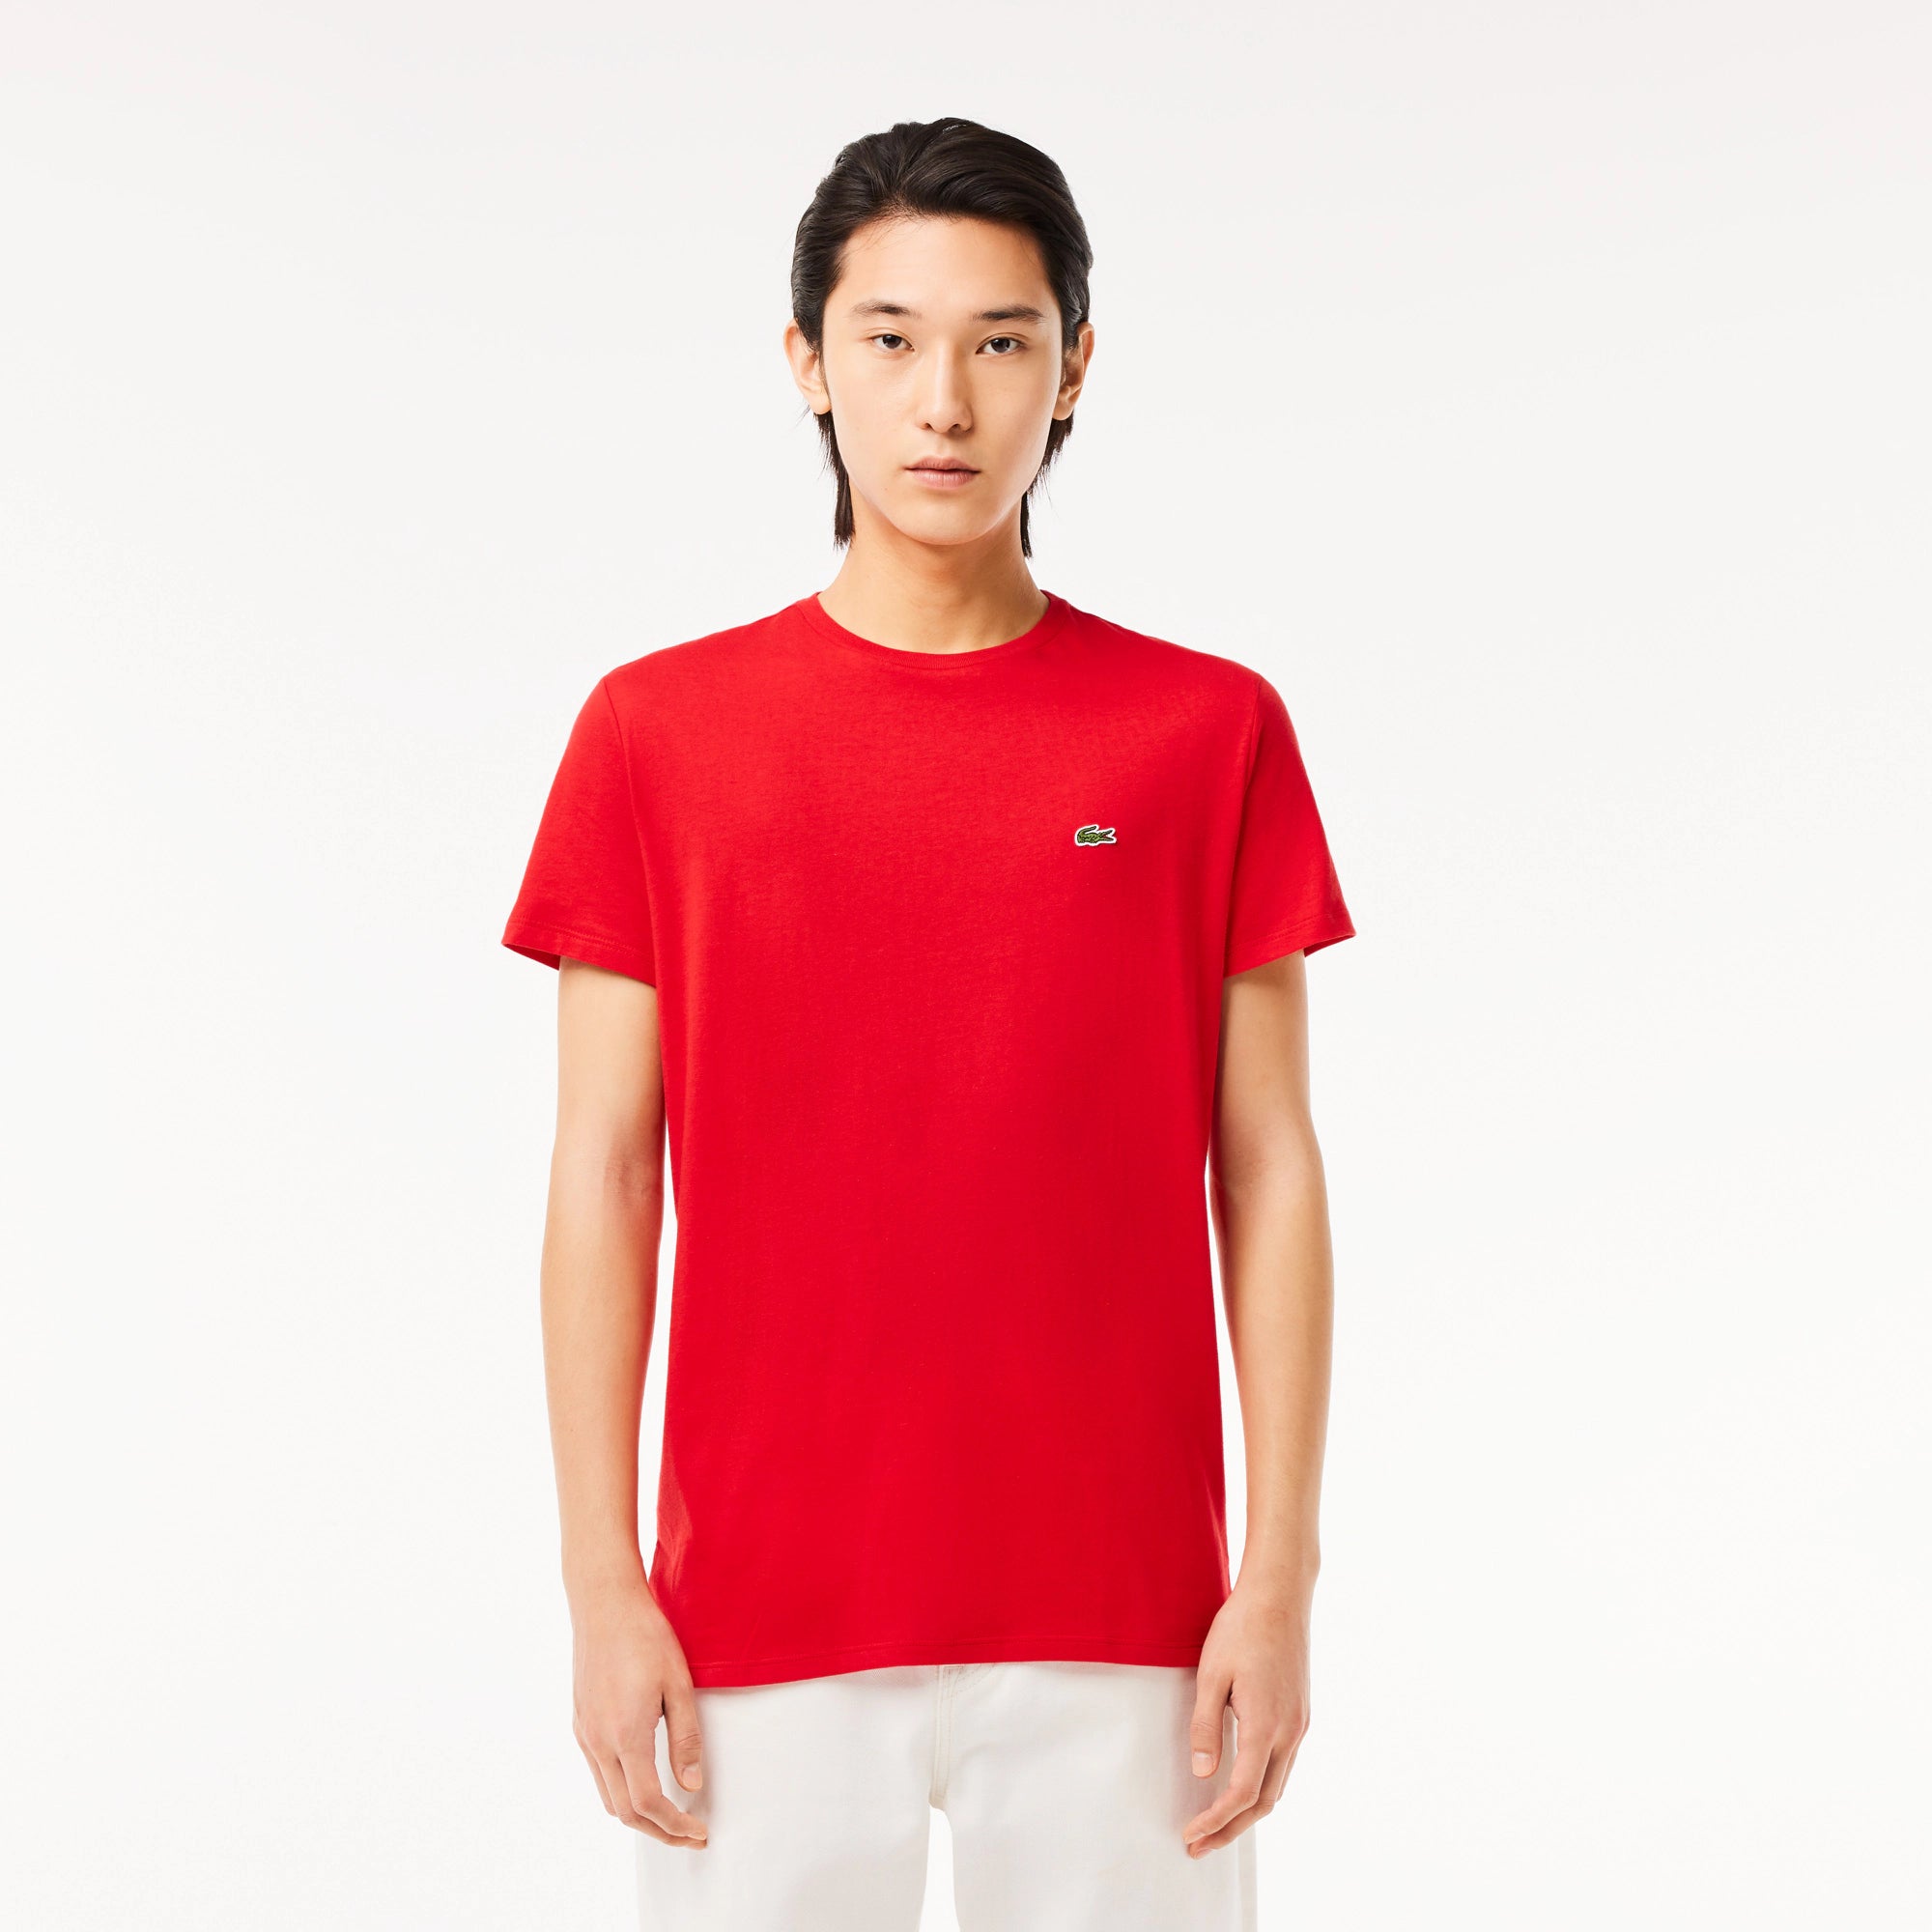 T-Shirt a Girocollo in Jersey di Cotone Pima / Rosso - Ideal Moda